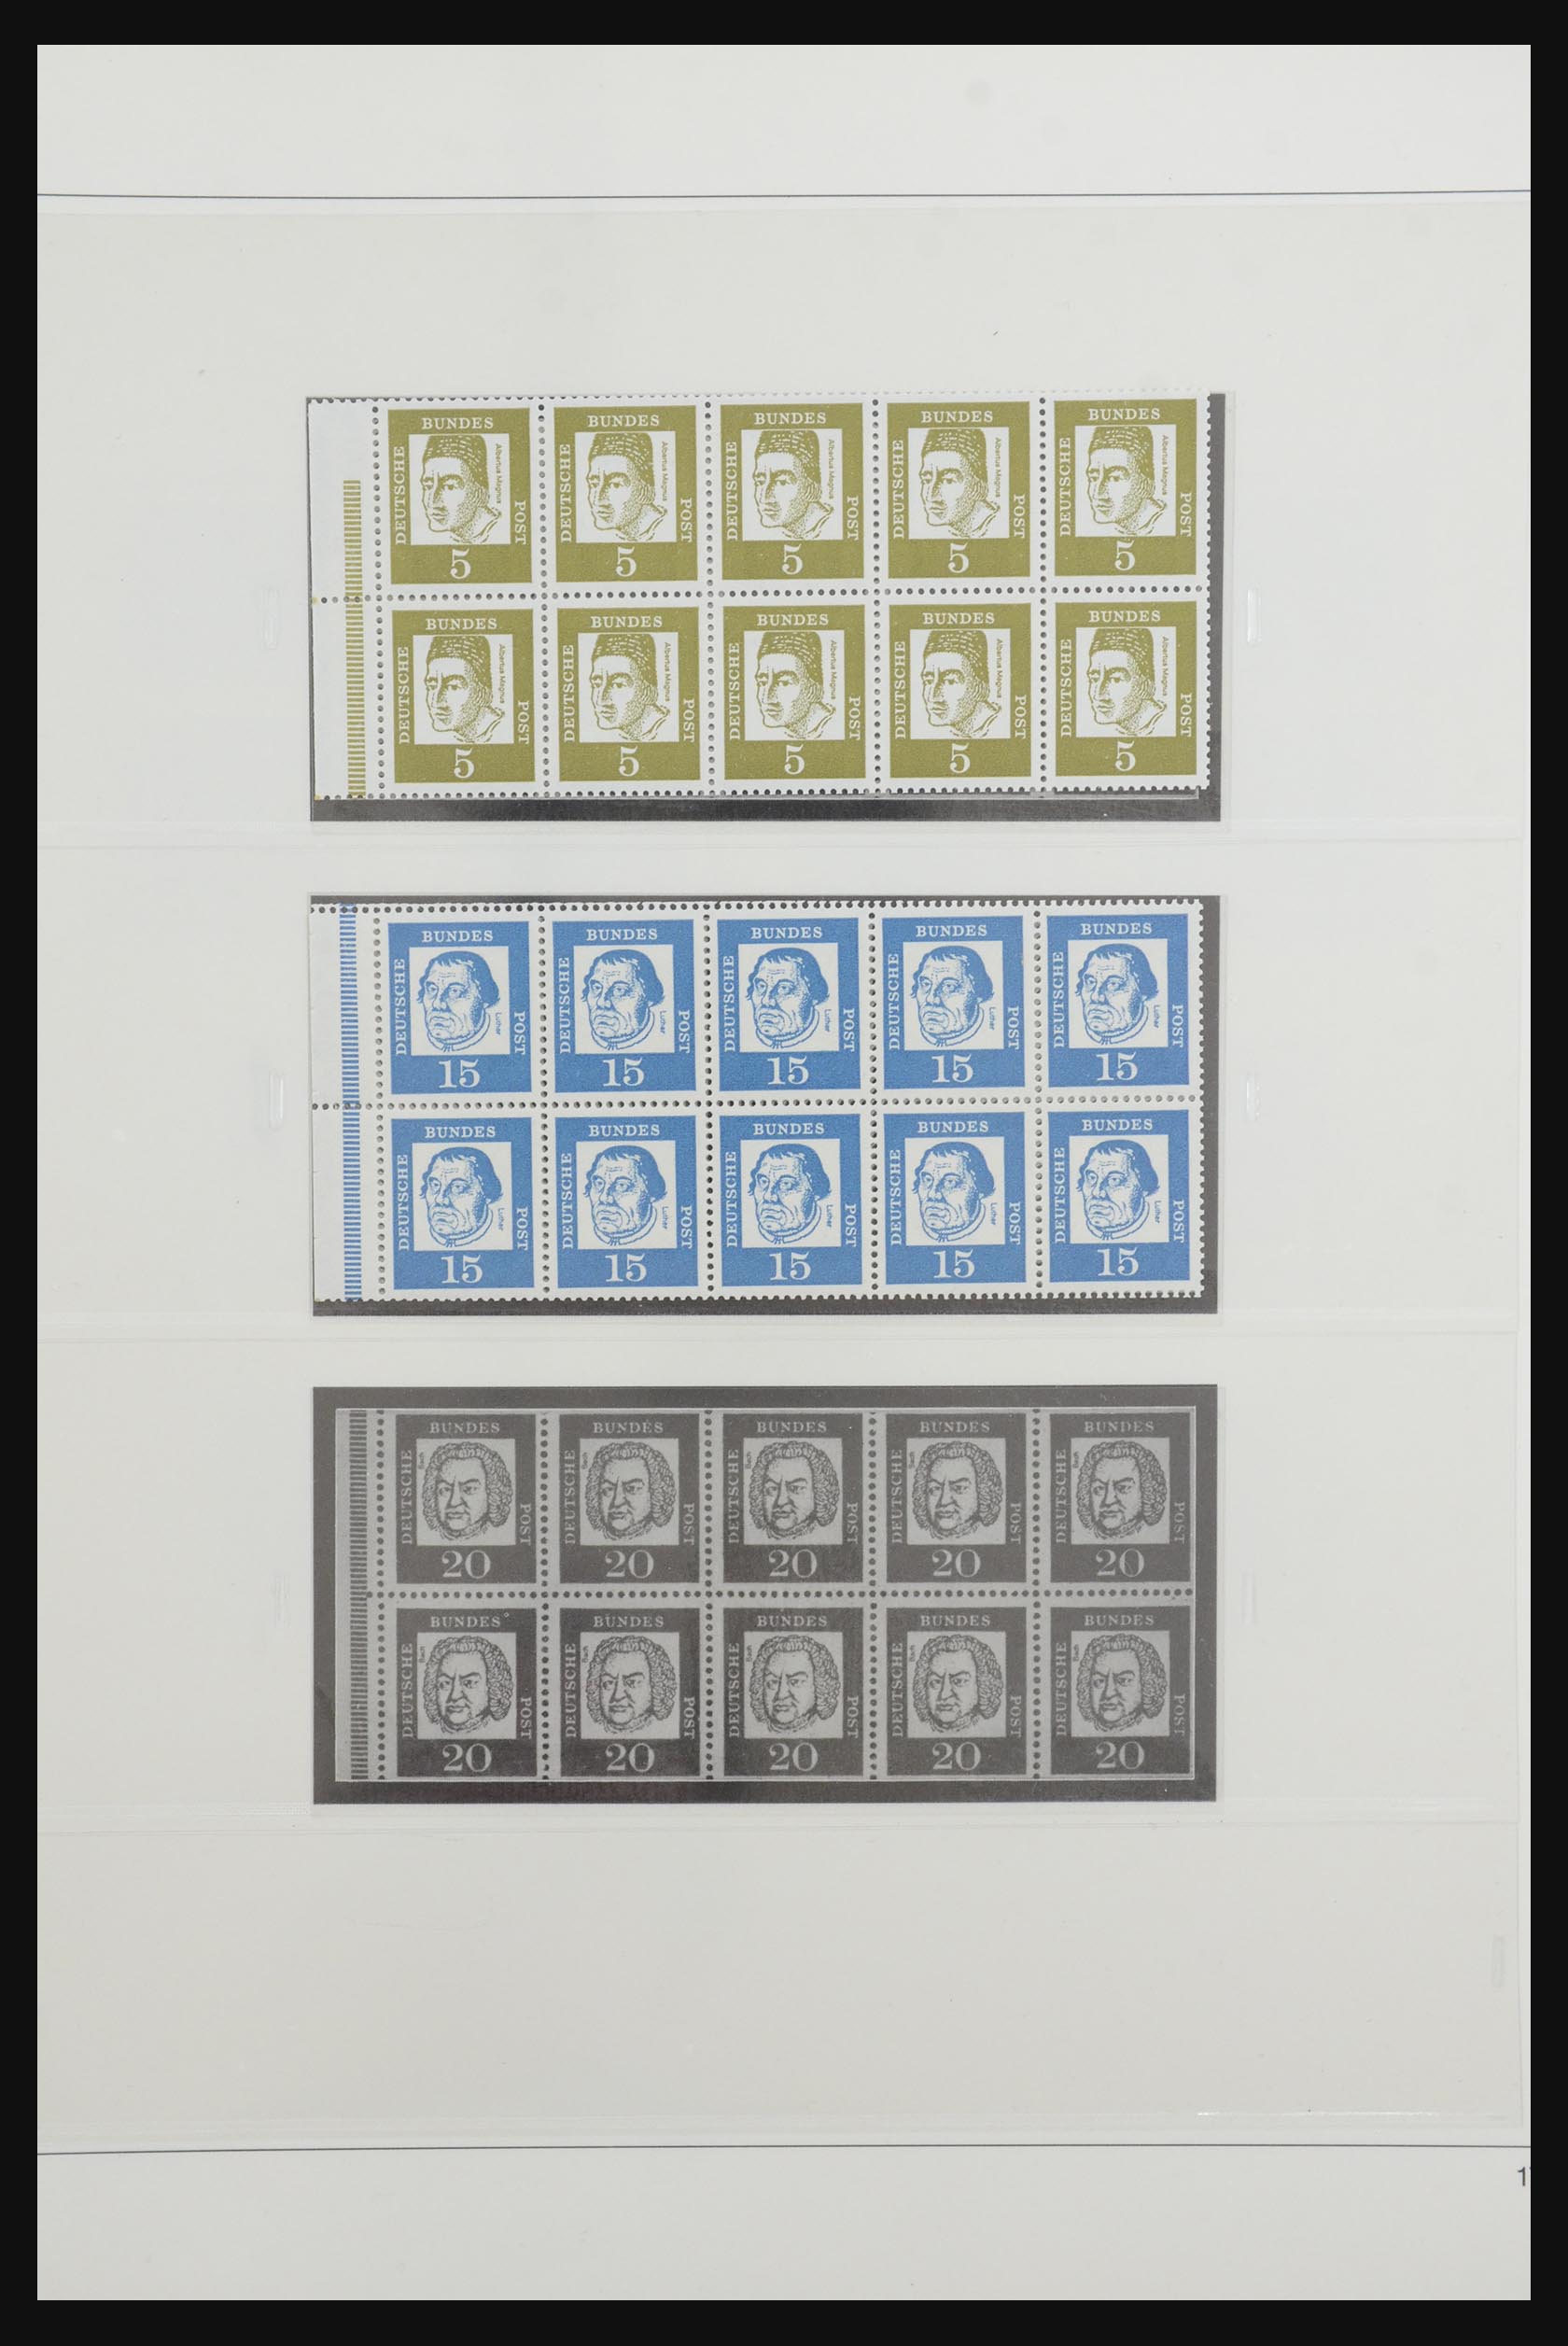 31842 022 - 31842 Bundespost combinaties 1951-2003.